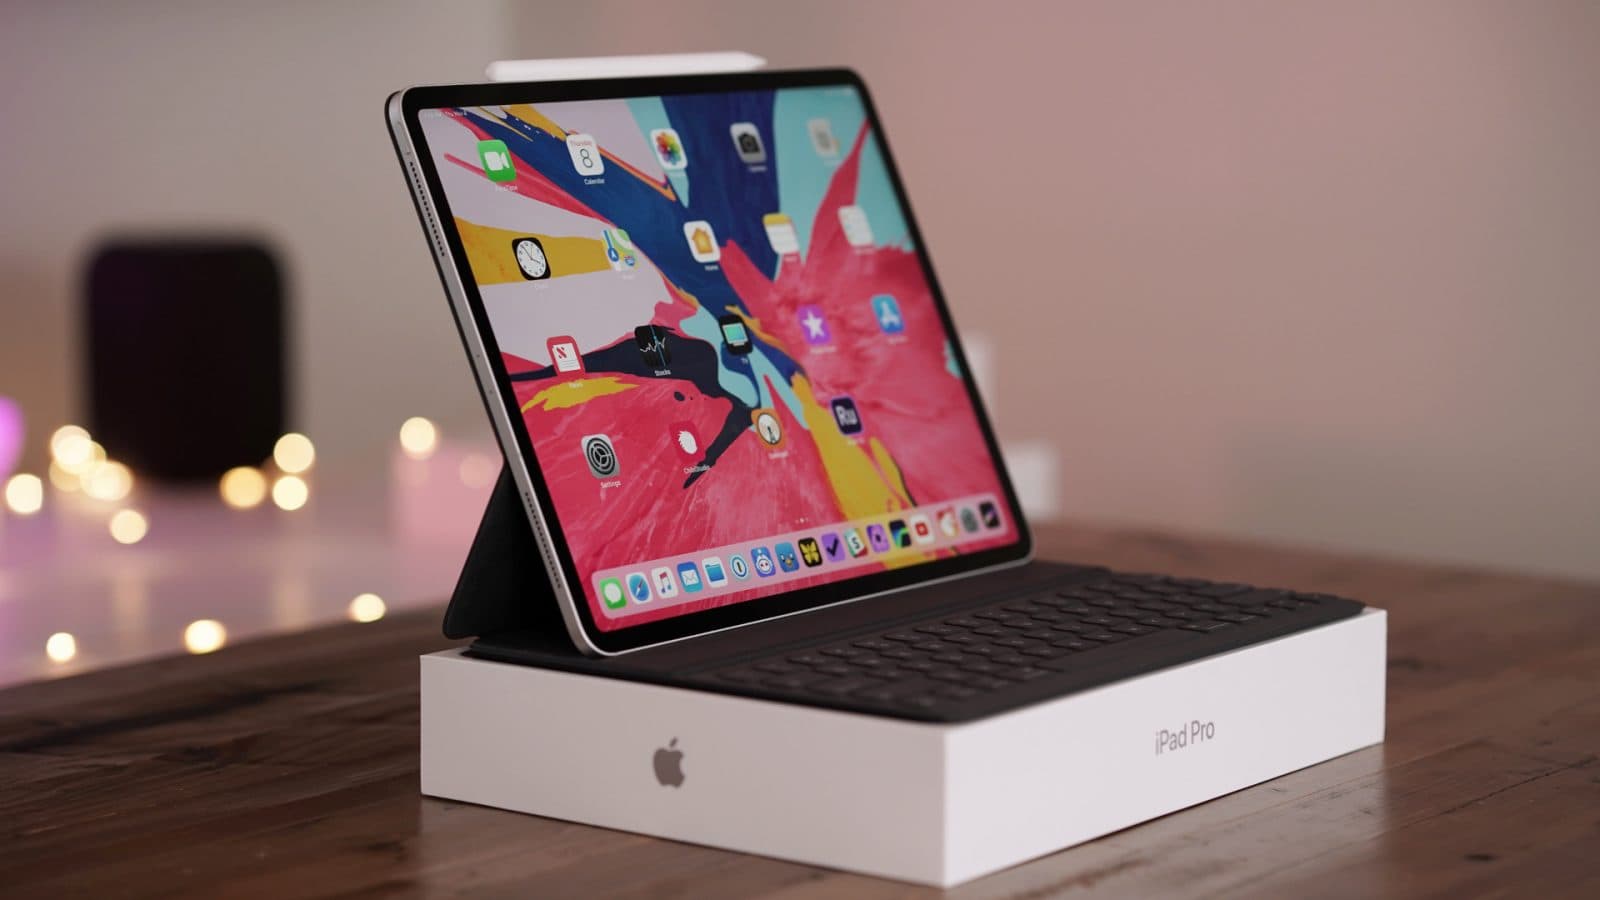 iPad mini 5, thông tin ipad mini 2019, ipad mới của apple, sự kiện tháng 3 apple, apple pencil 2, tính năng mới ipad mini 5, màn hình iPad mini 5